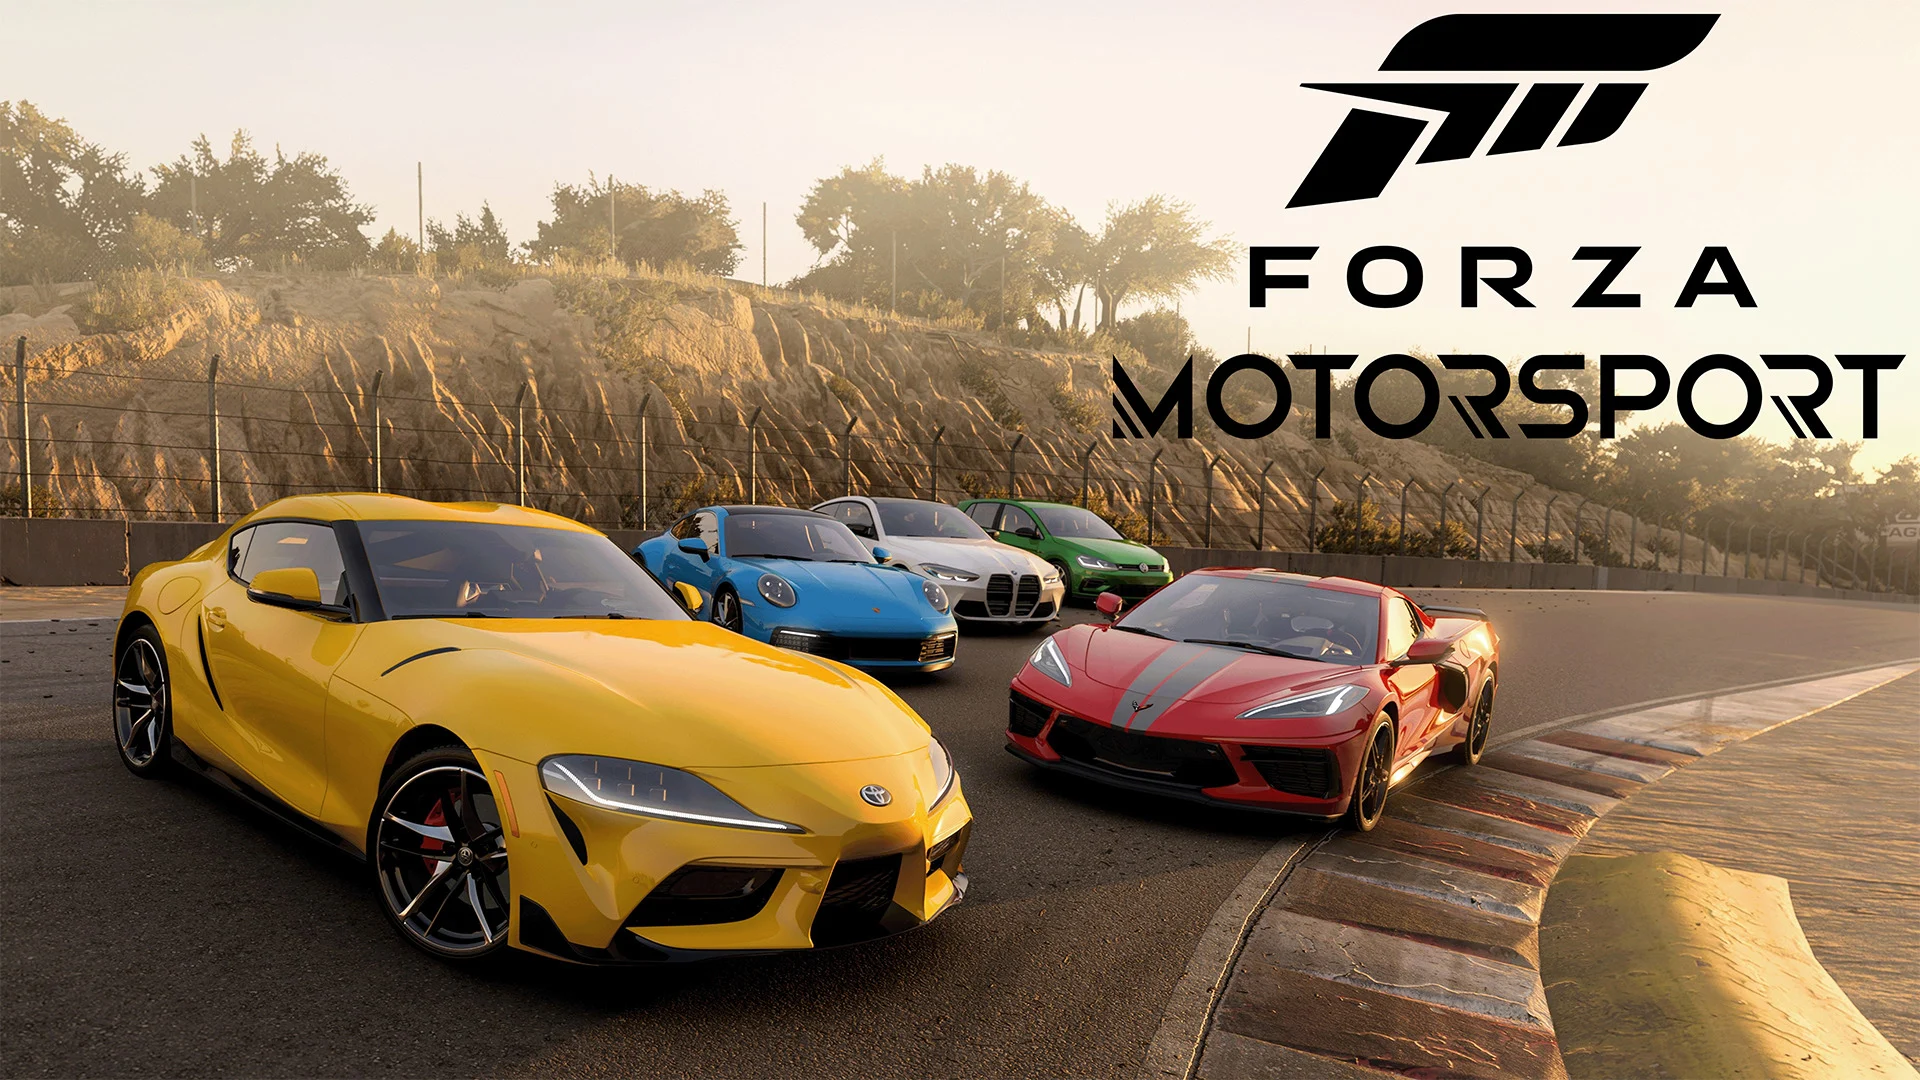 Forza Motorsport opdatering 1.0 med en masse fejlrettelser og gameplay-forbedringer